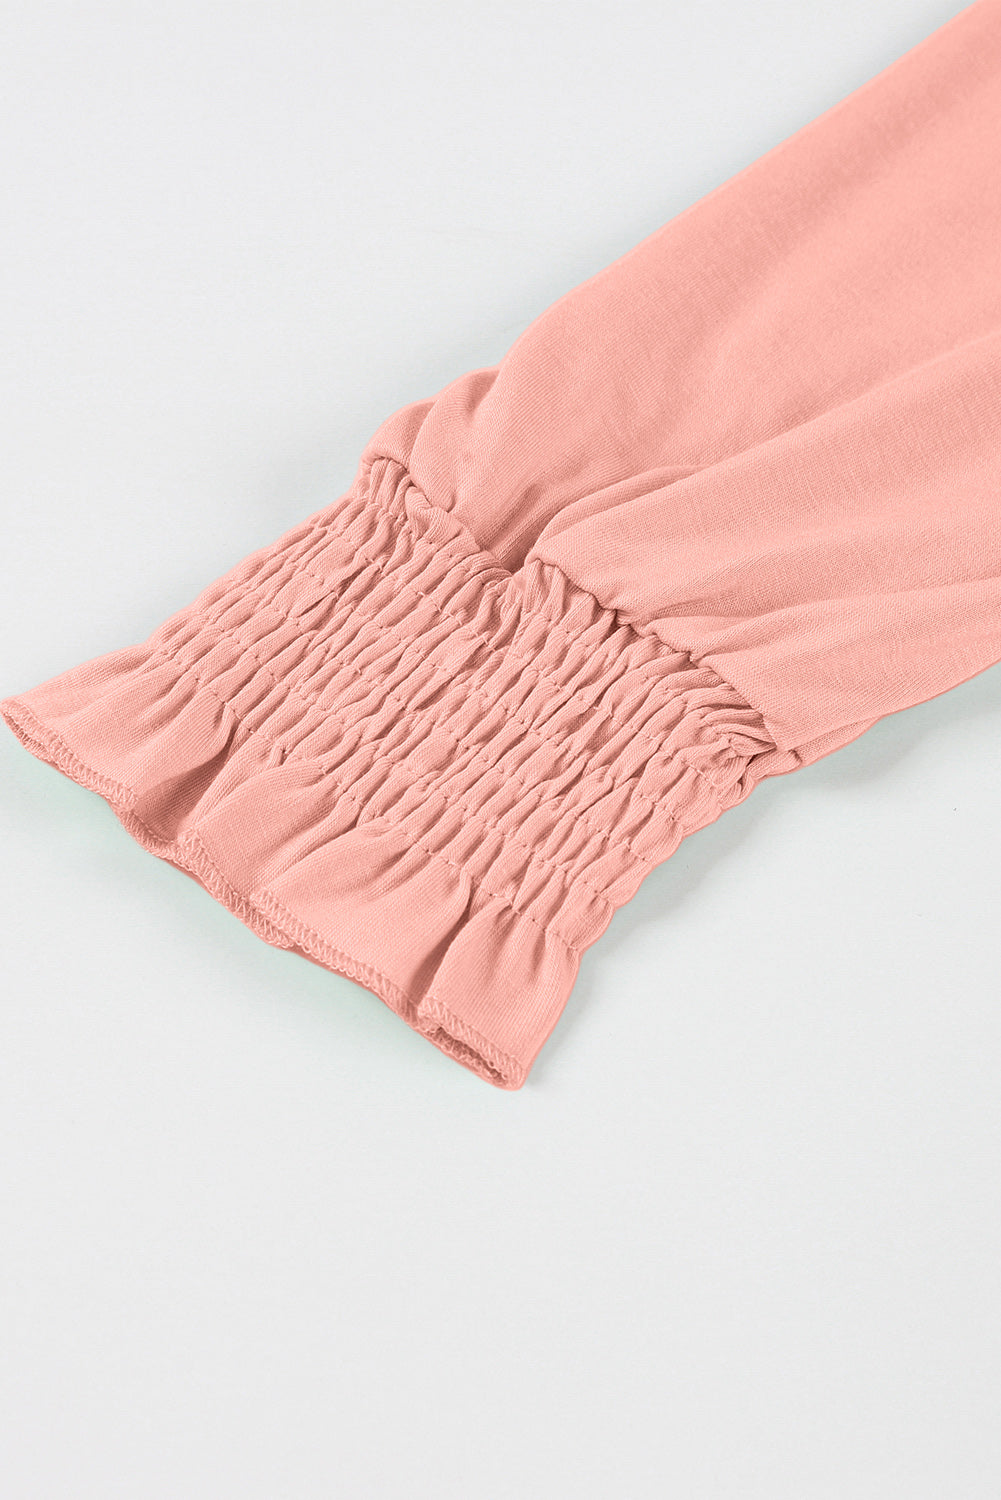 Rožnata majica s kvadratastim izrezom in rokavi velike velikosti